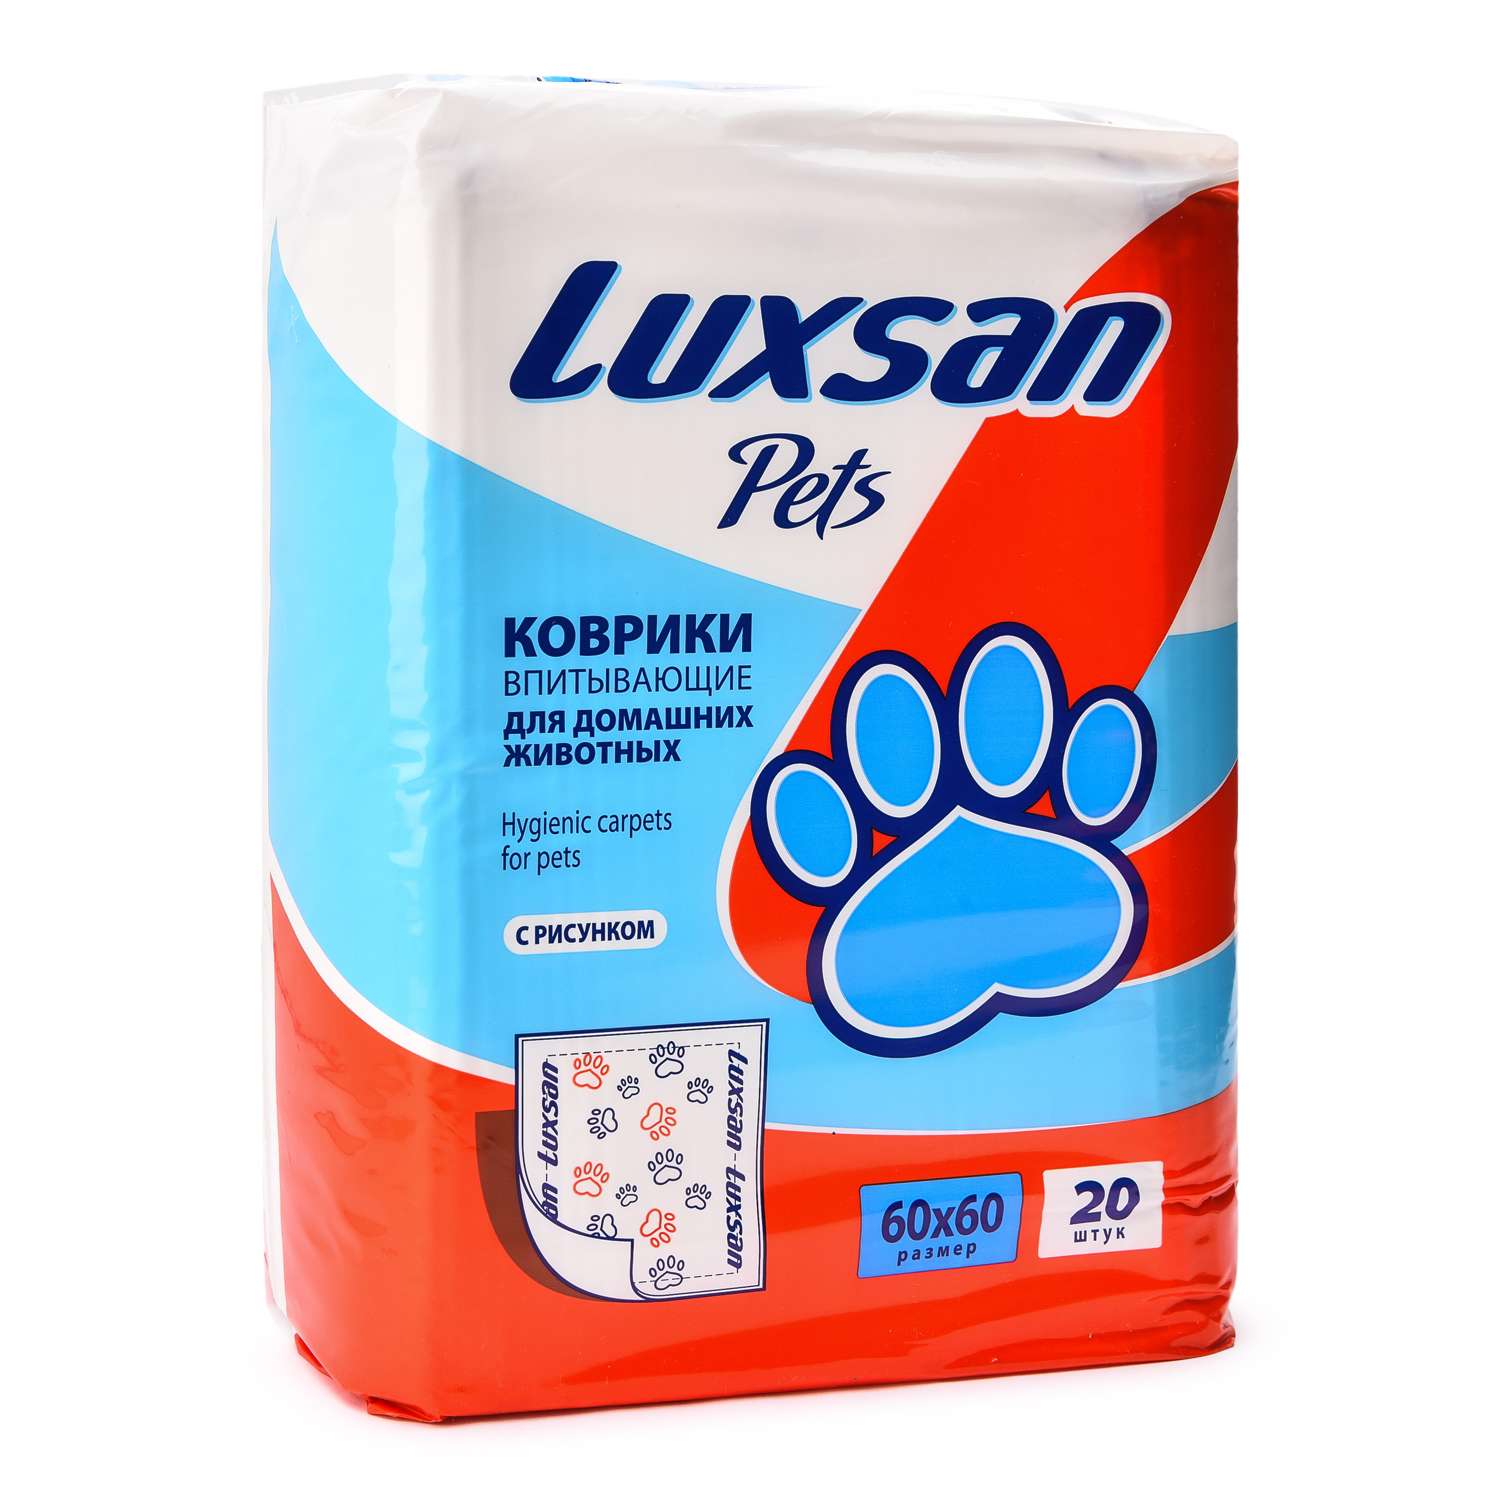 Коврики для животных Luxsan Pets впитывающие 60*60см 20шт - фото 1